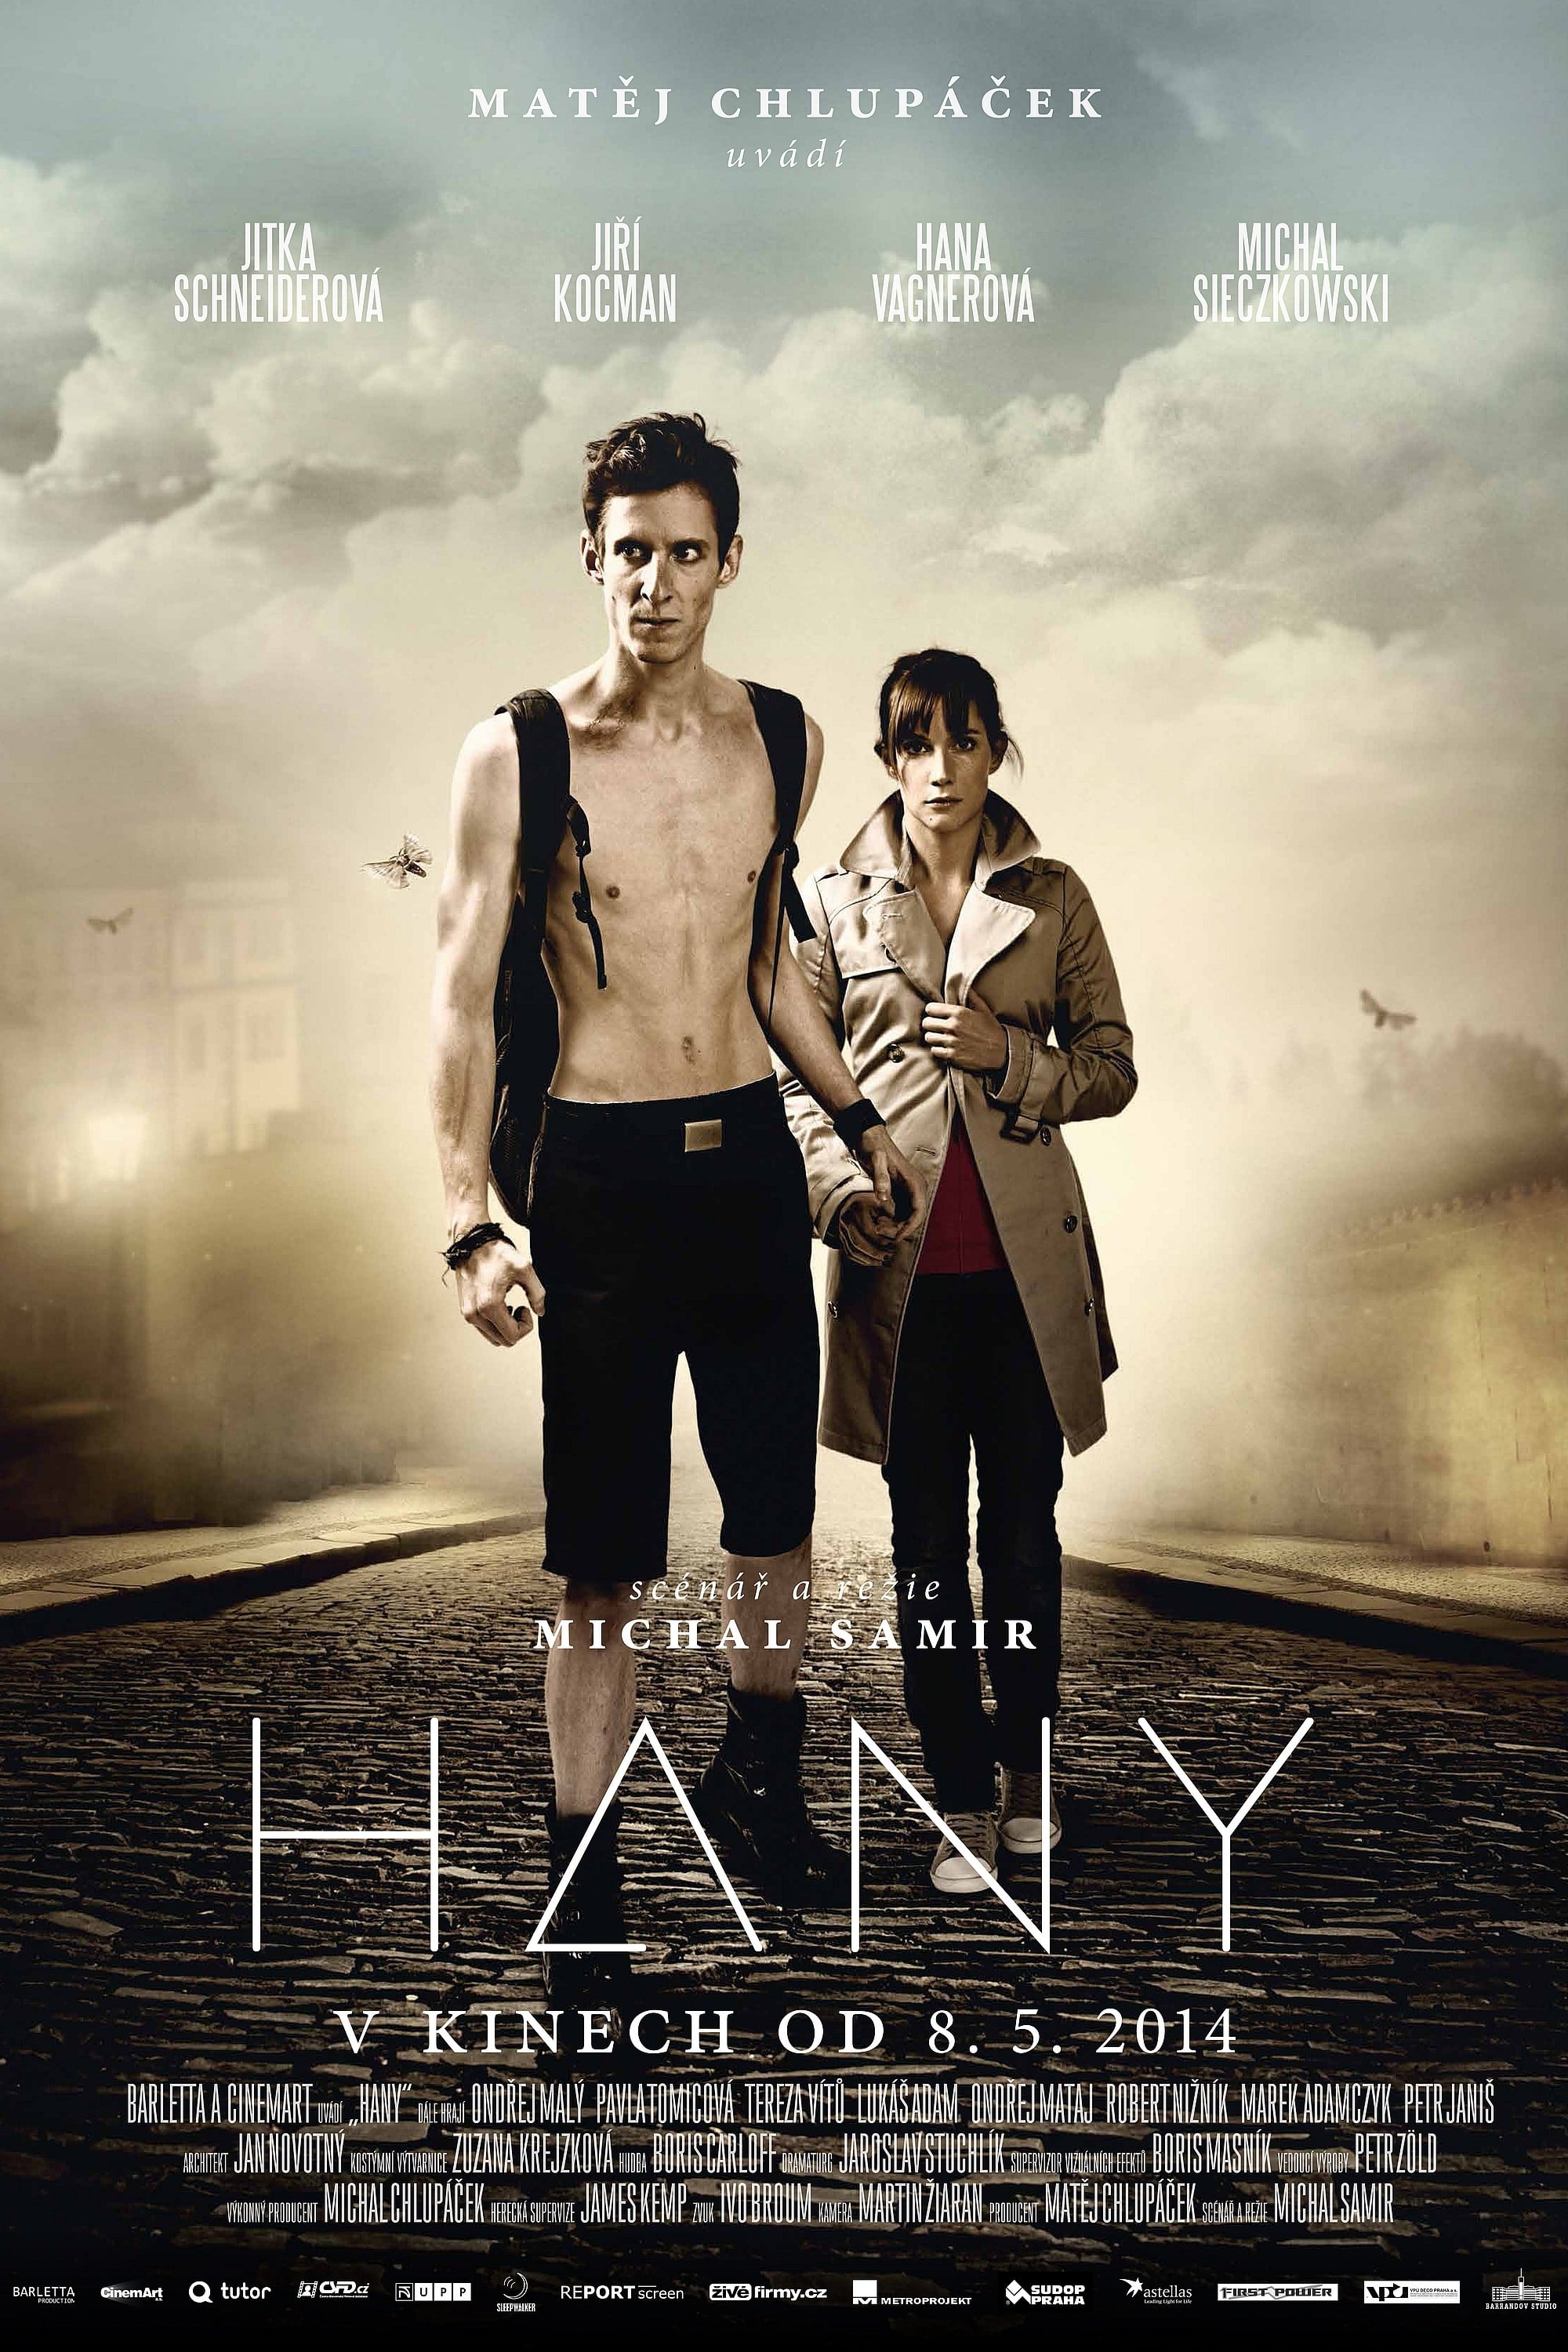 Hany (2014)